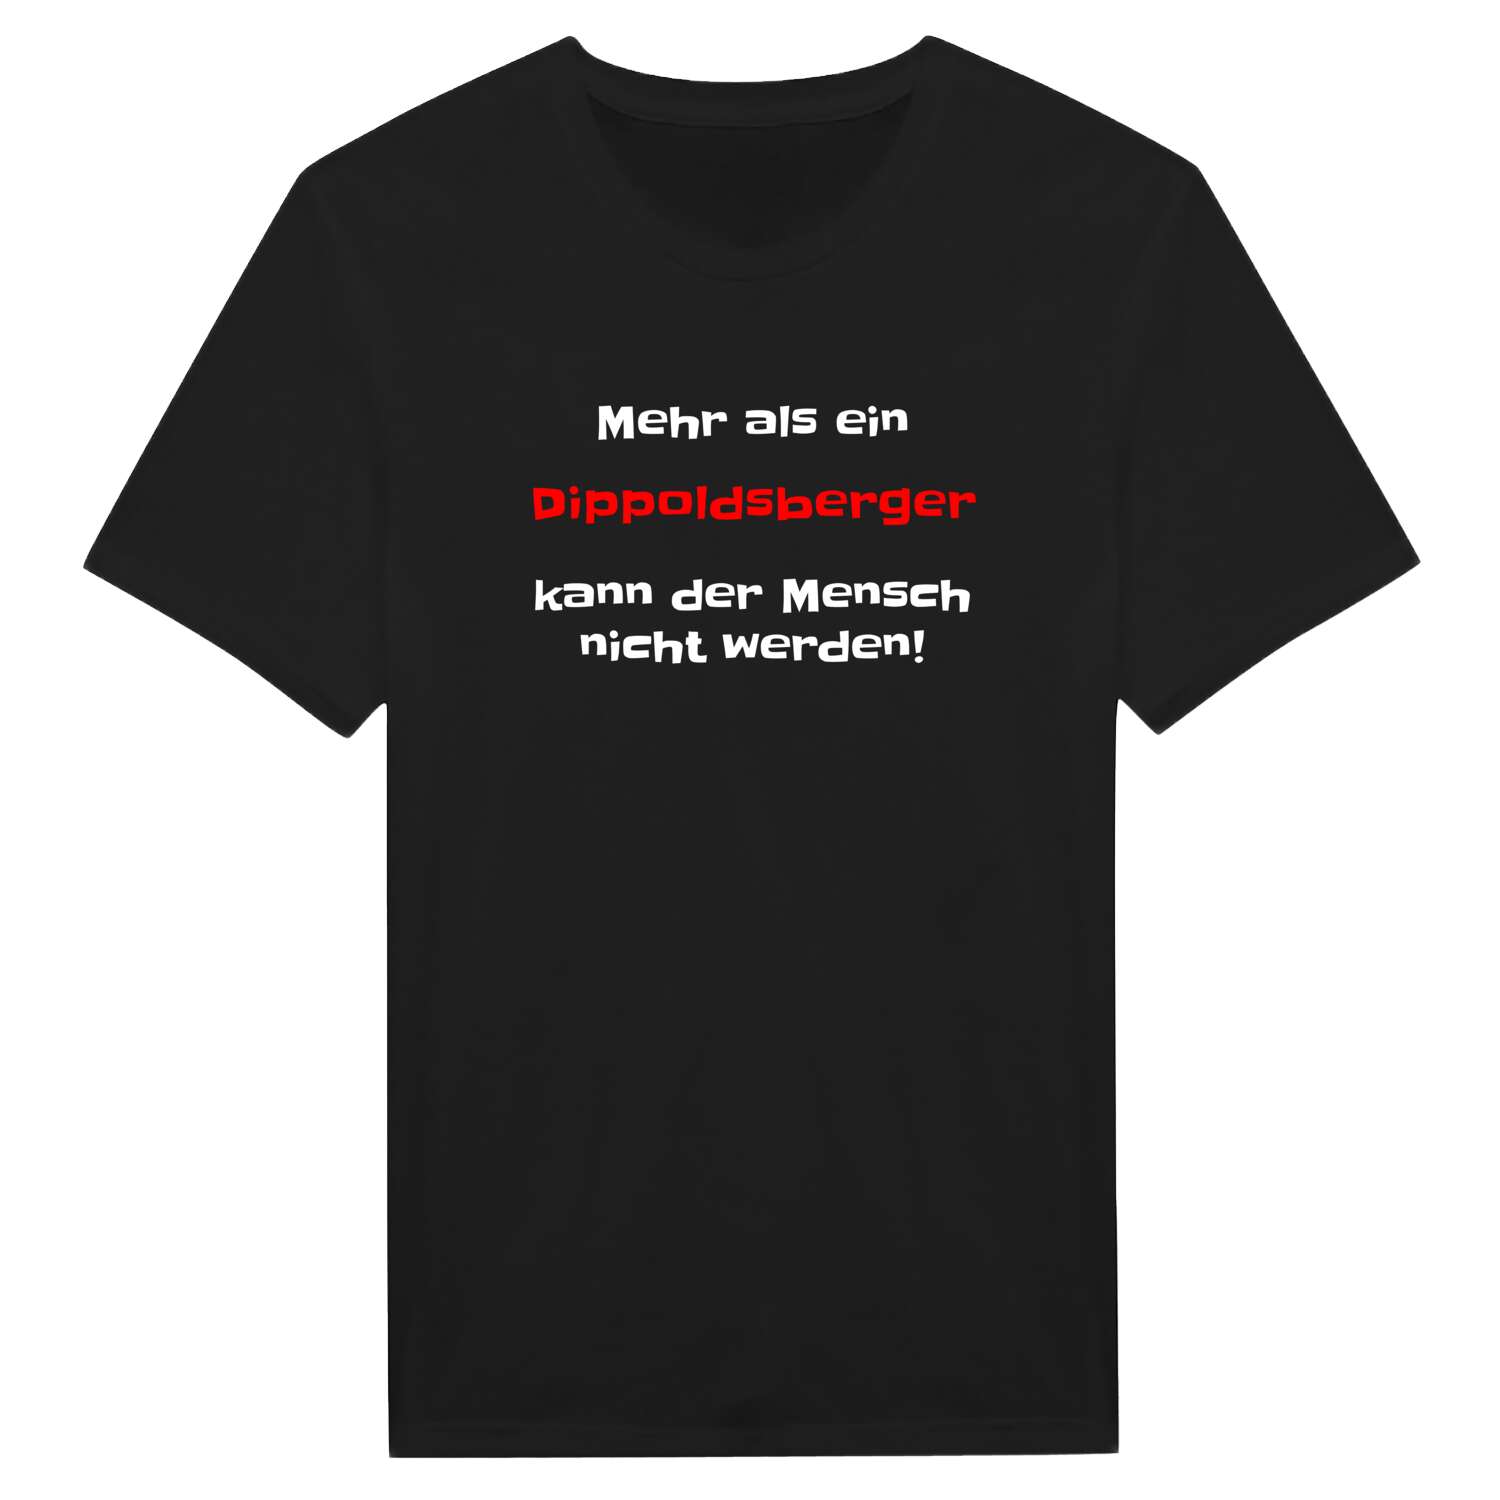 Dippoldsberg T-Shirt »Mehr als ein«